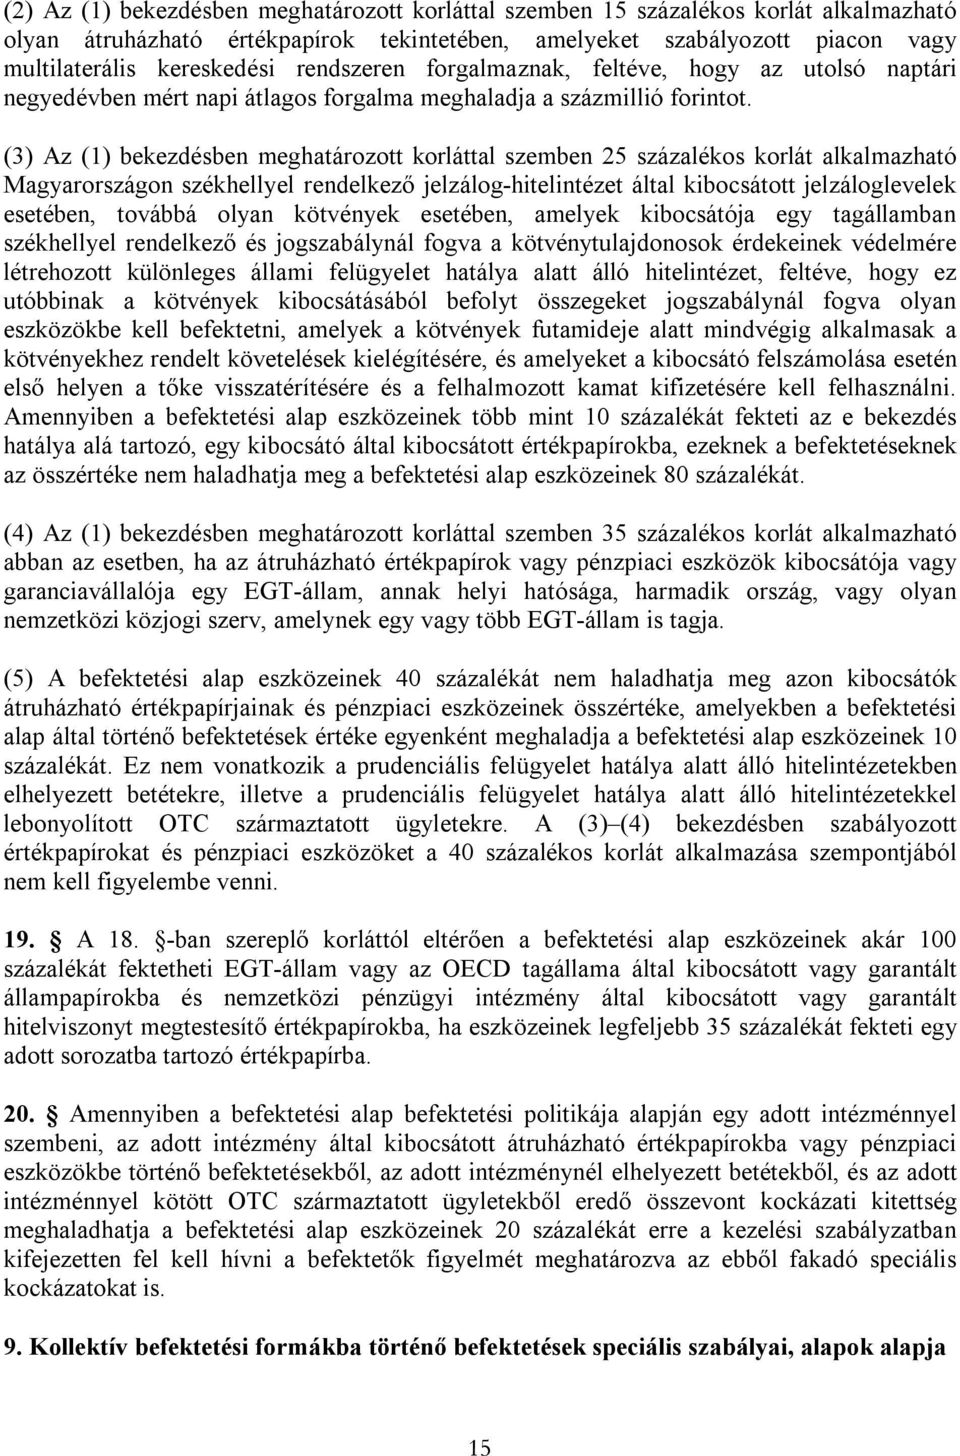 (3) Az (1) bekezdésben meghatározott korláttal szemben 25 százalékos korlát alkalmazható Magyarországon székhellyel rendelkező jelzálog-hitelintézet által kibocsátott jelzáloglevelek esetében,